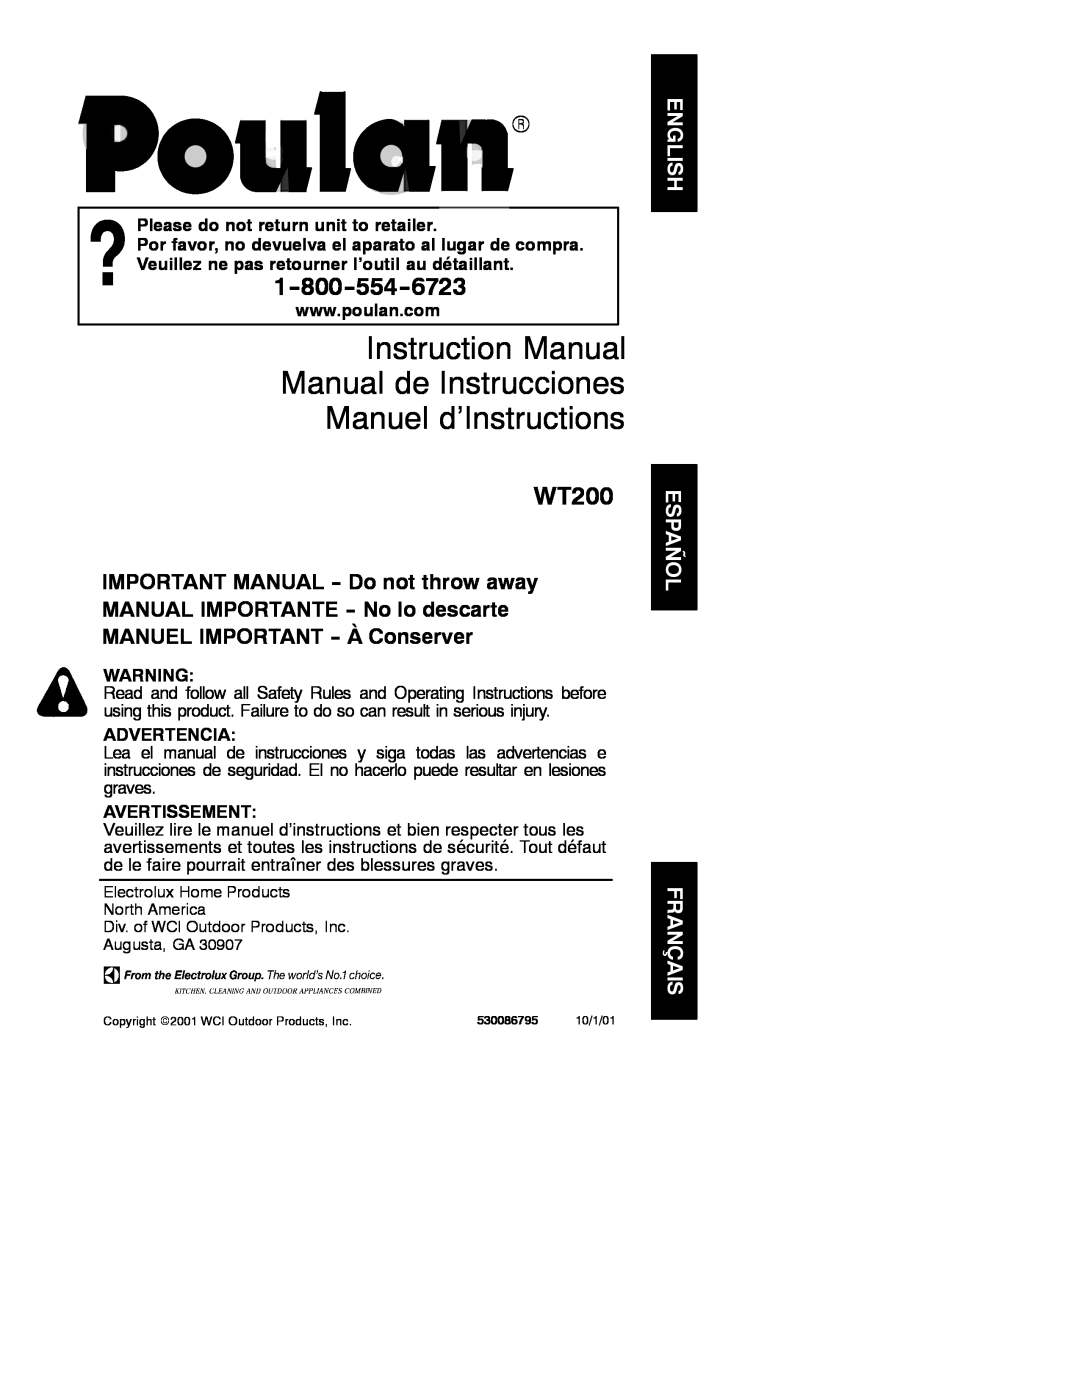 Poulan 530086795 instruction manual Instruction Manual Manual de Instrucciones Manuel d’Instructions, WT200, Advertencia 